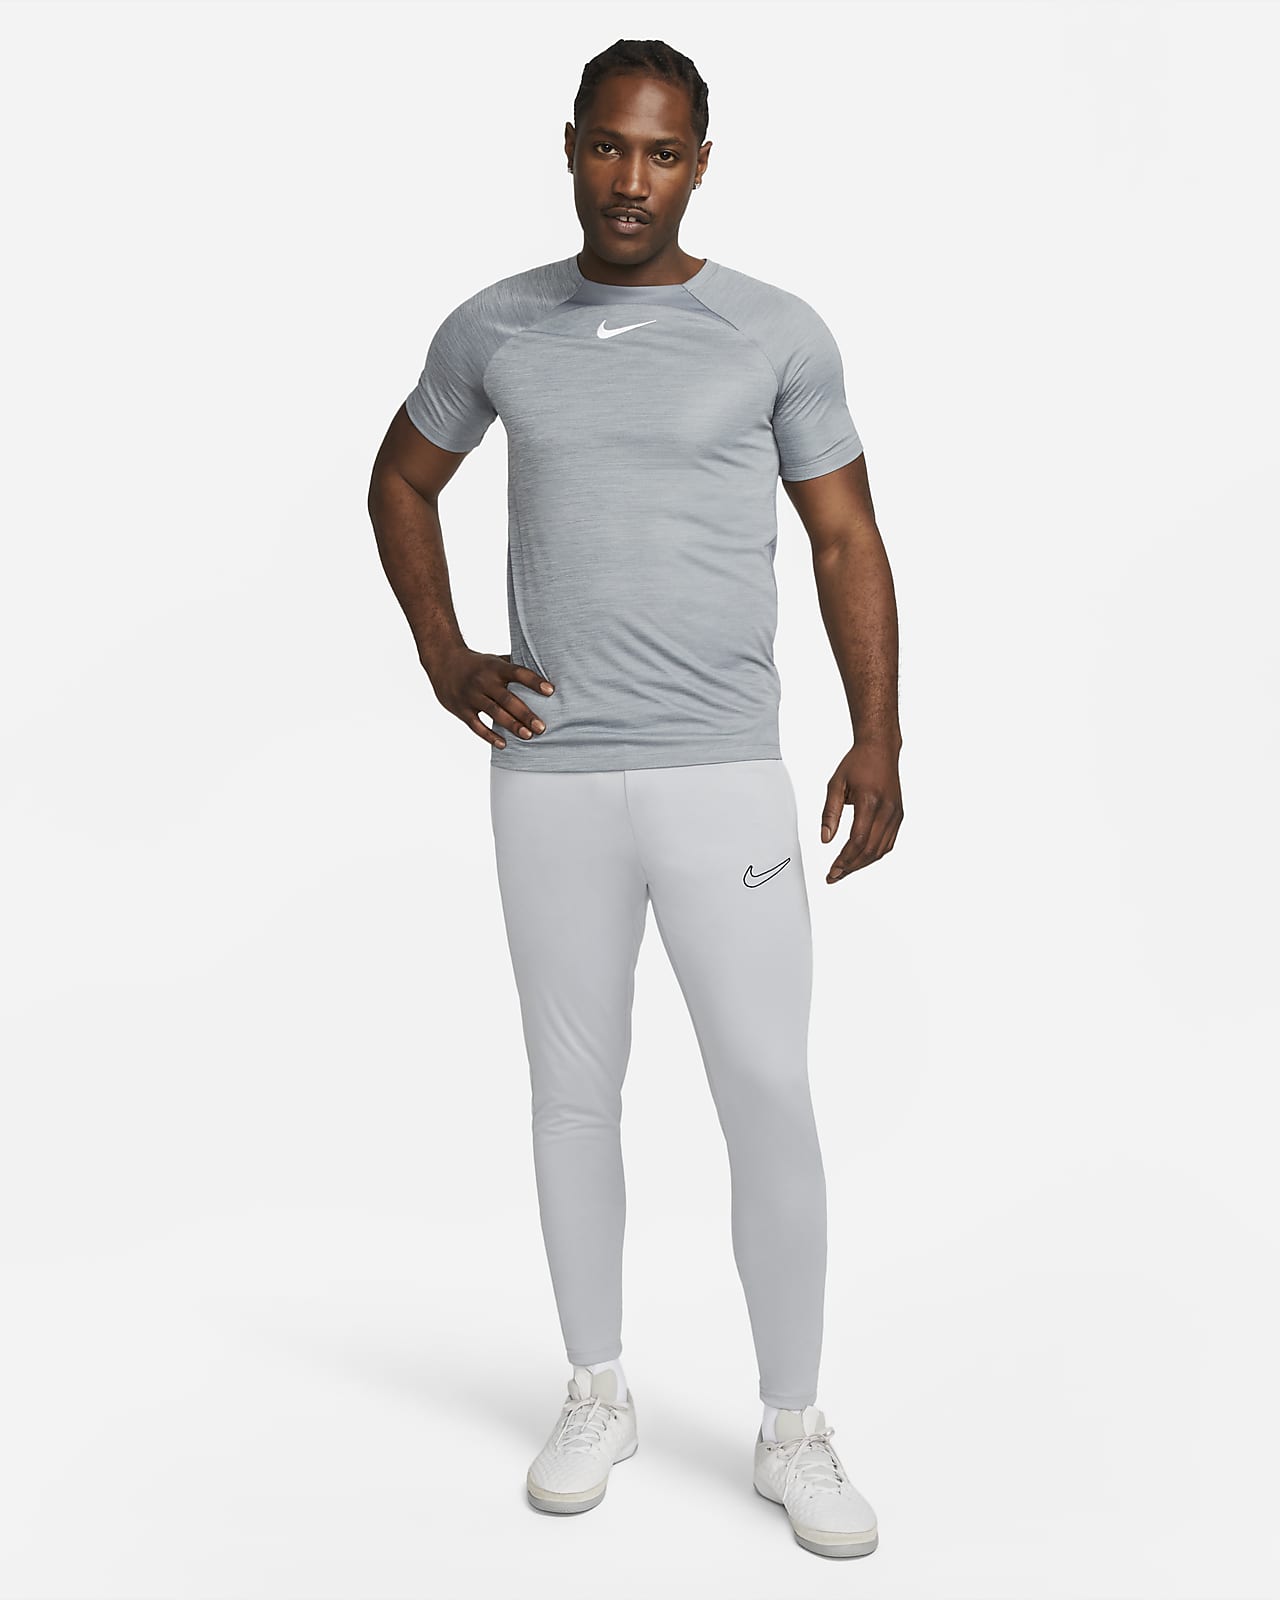 Pantalon Nike Dri-FIT Academy Pro pour Homme - DH9240-010 - Noir